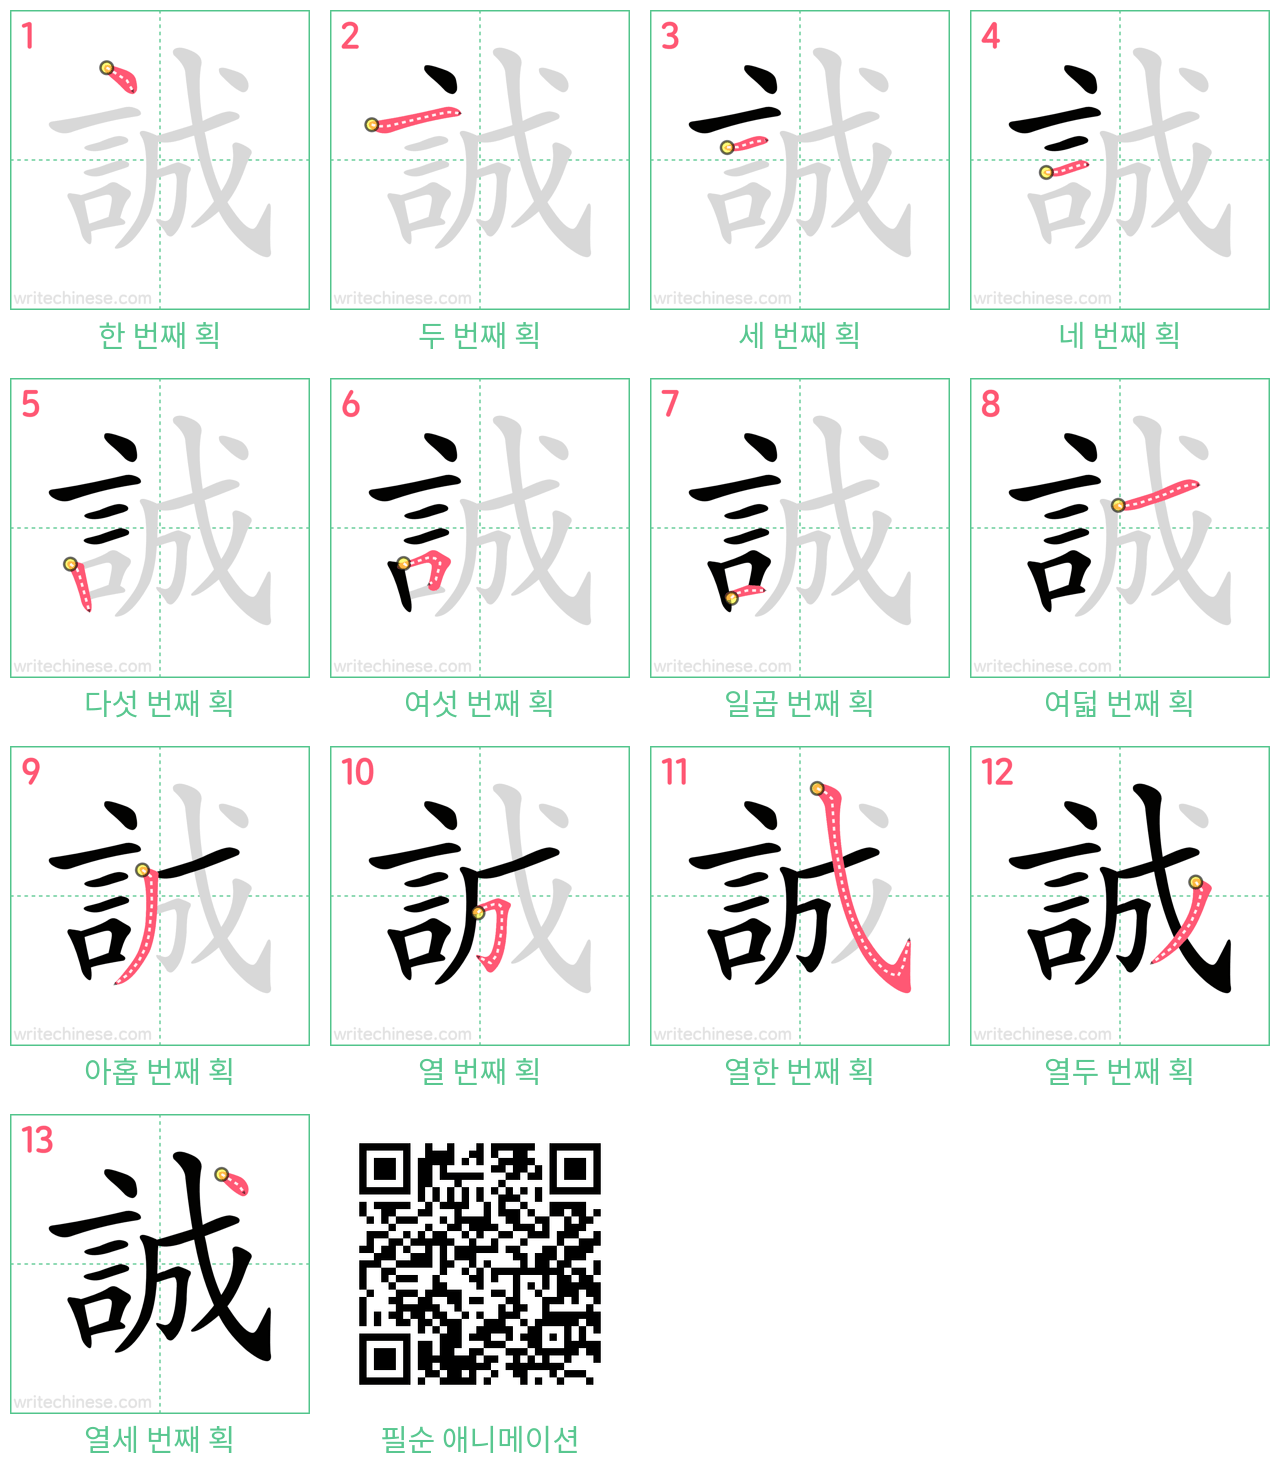 誠 step-by-step stroke order diagrams